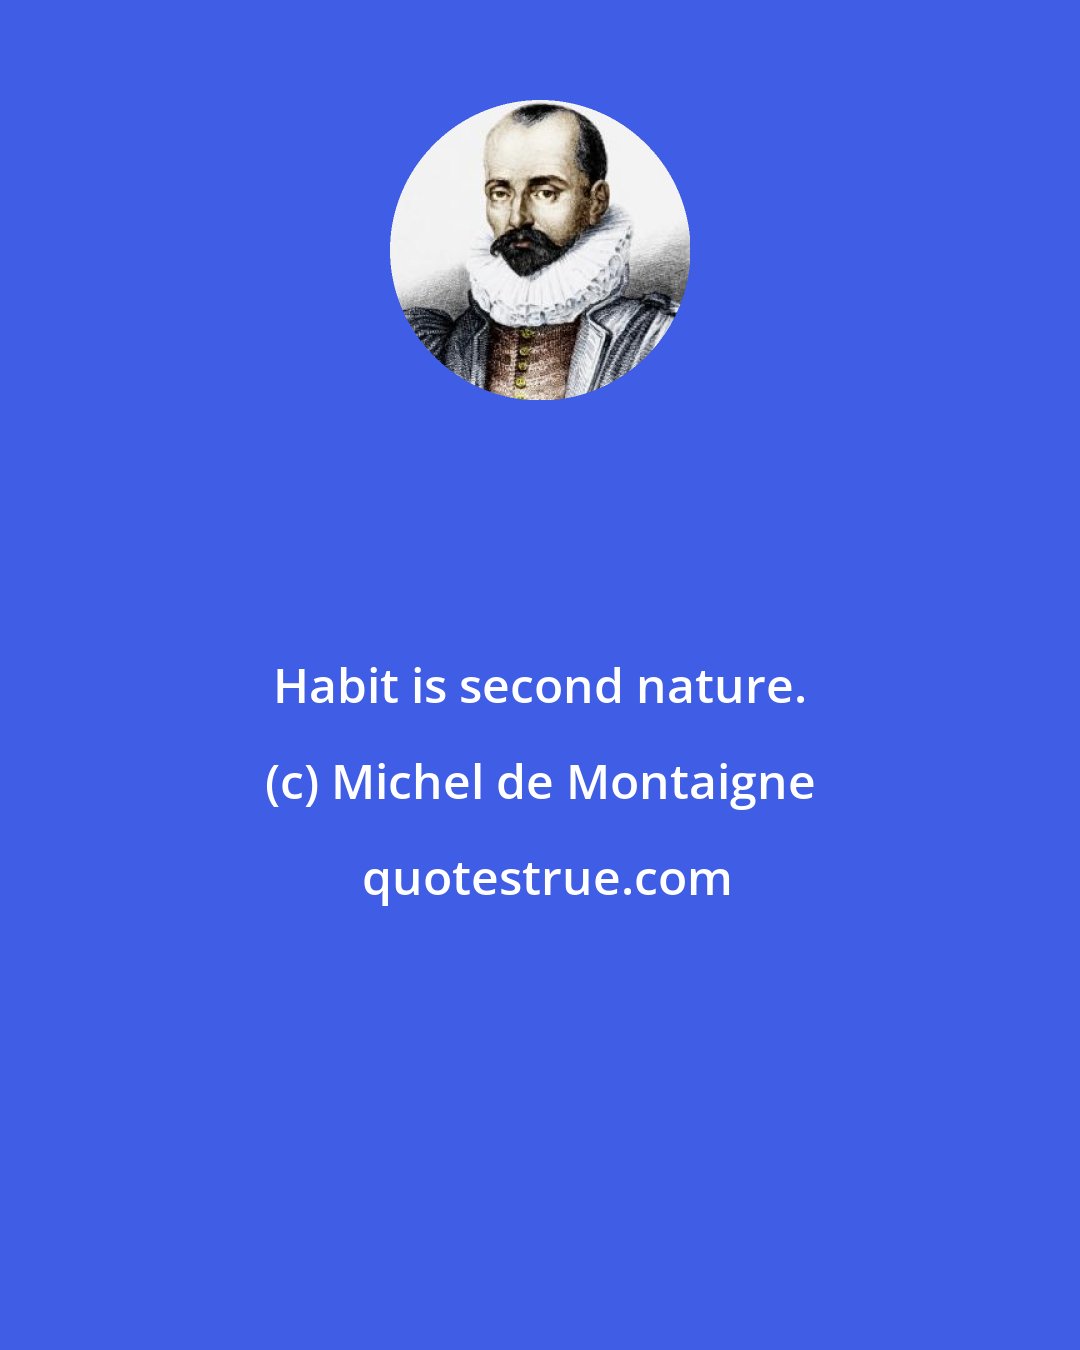 Michel de Montaigne: Habit is second nature.